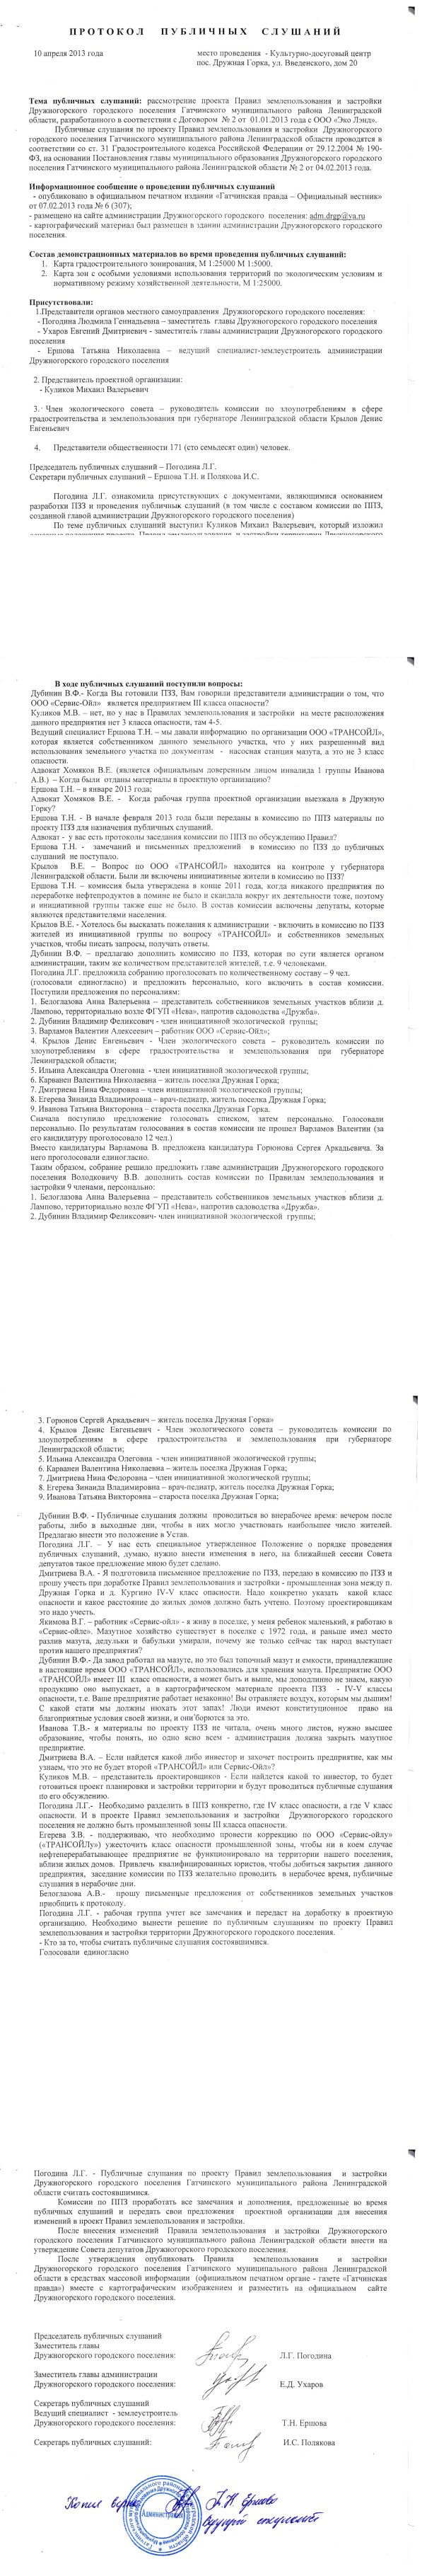 Протокол слушаний по проекту ПЗЗ Др. Горки от 10.04.2013 